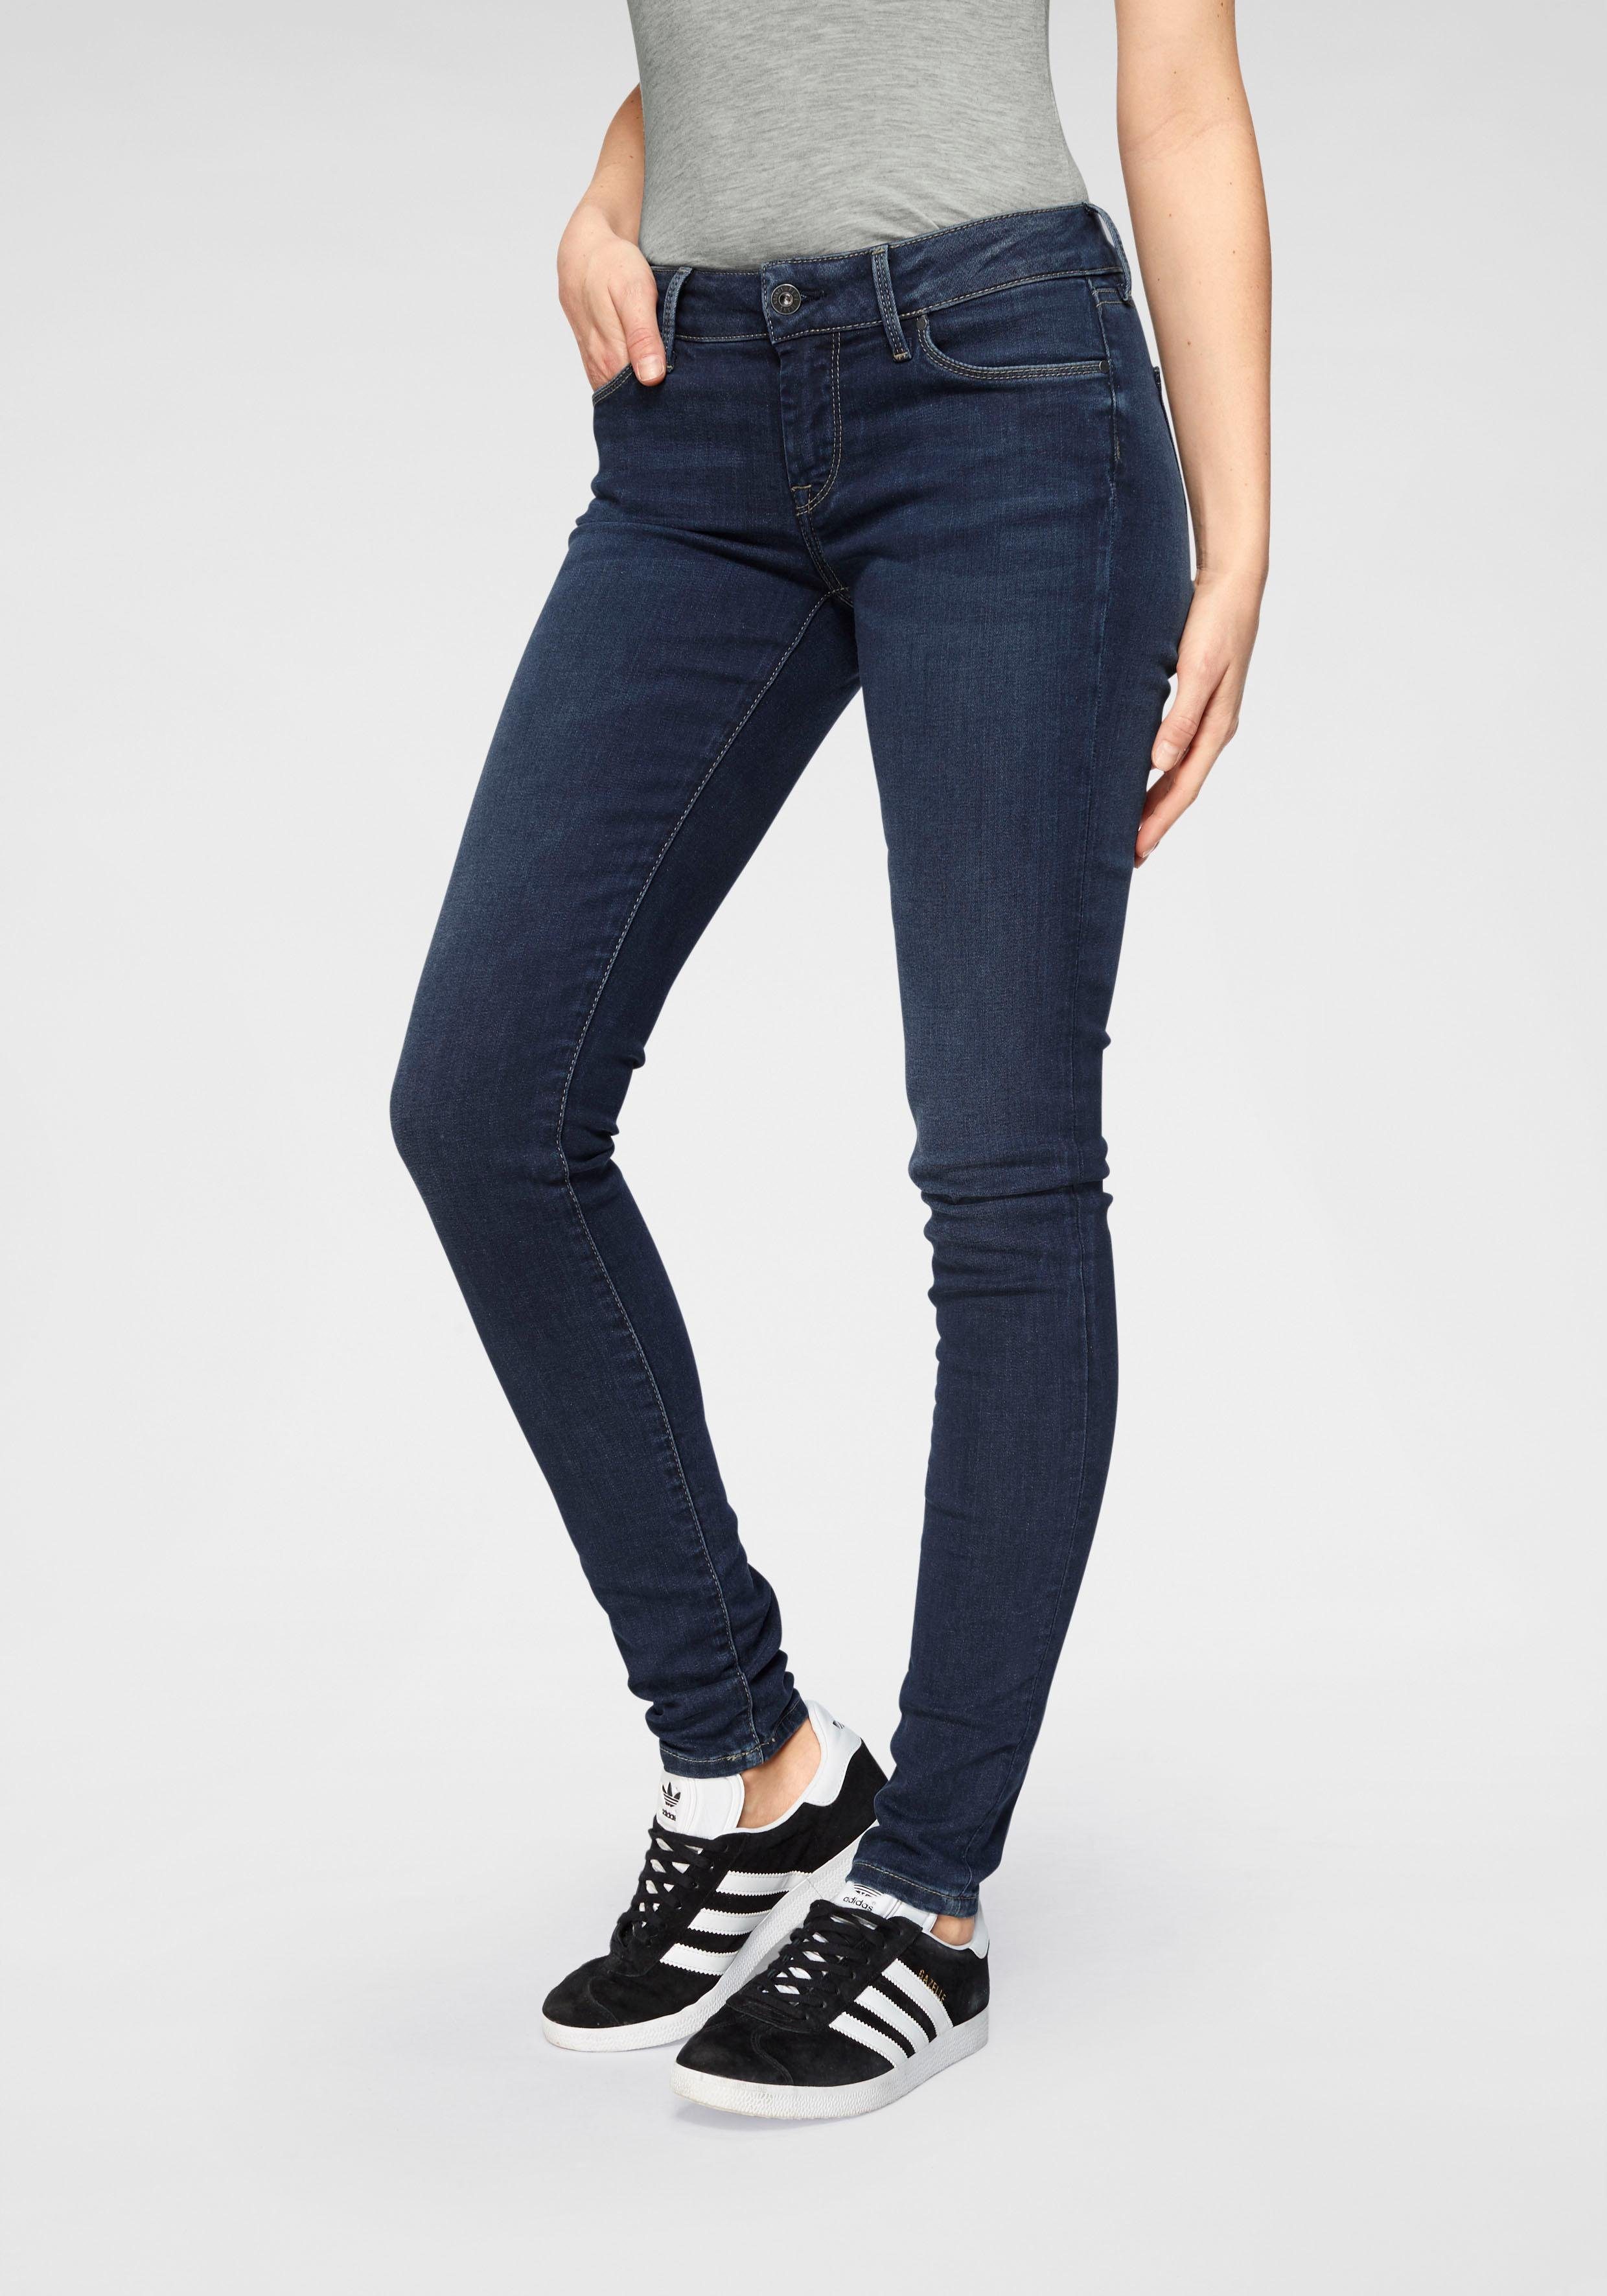 Pepe Jeans Skinny-fit-Jeans SOHO im 5-Pocket-Stil mit 1-Knopf Bund und Stretch-Anteil H45 dark used worn